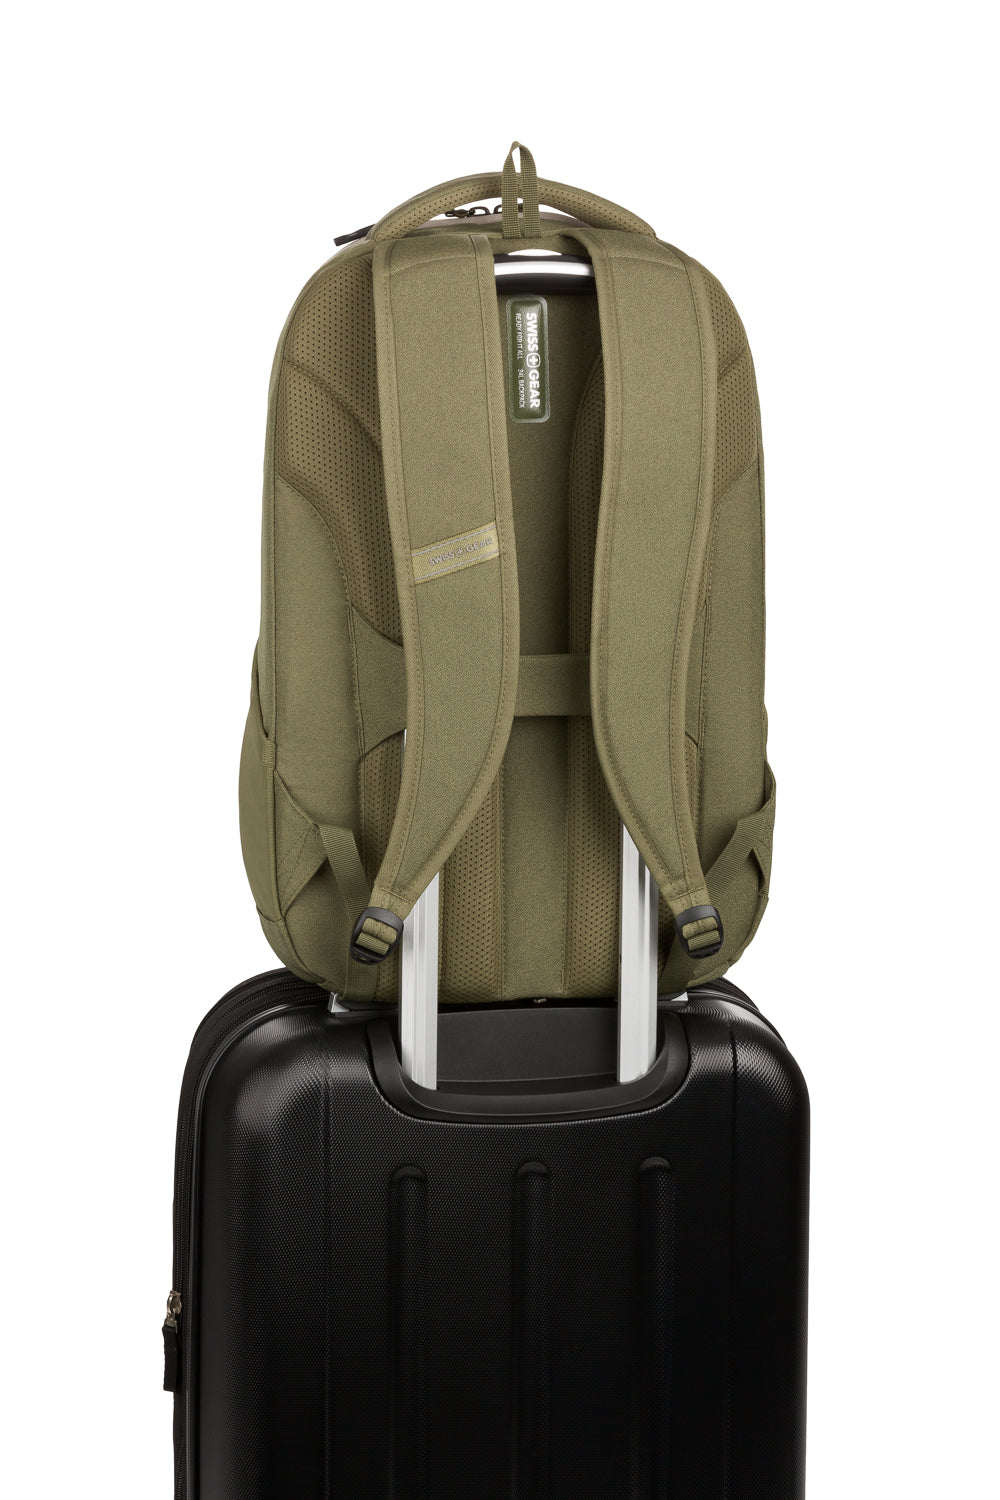 SwissGear 8175 16” Laptop Backpack